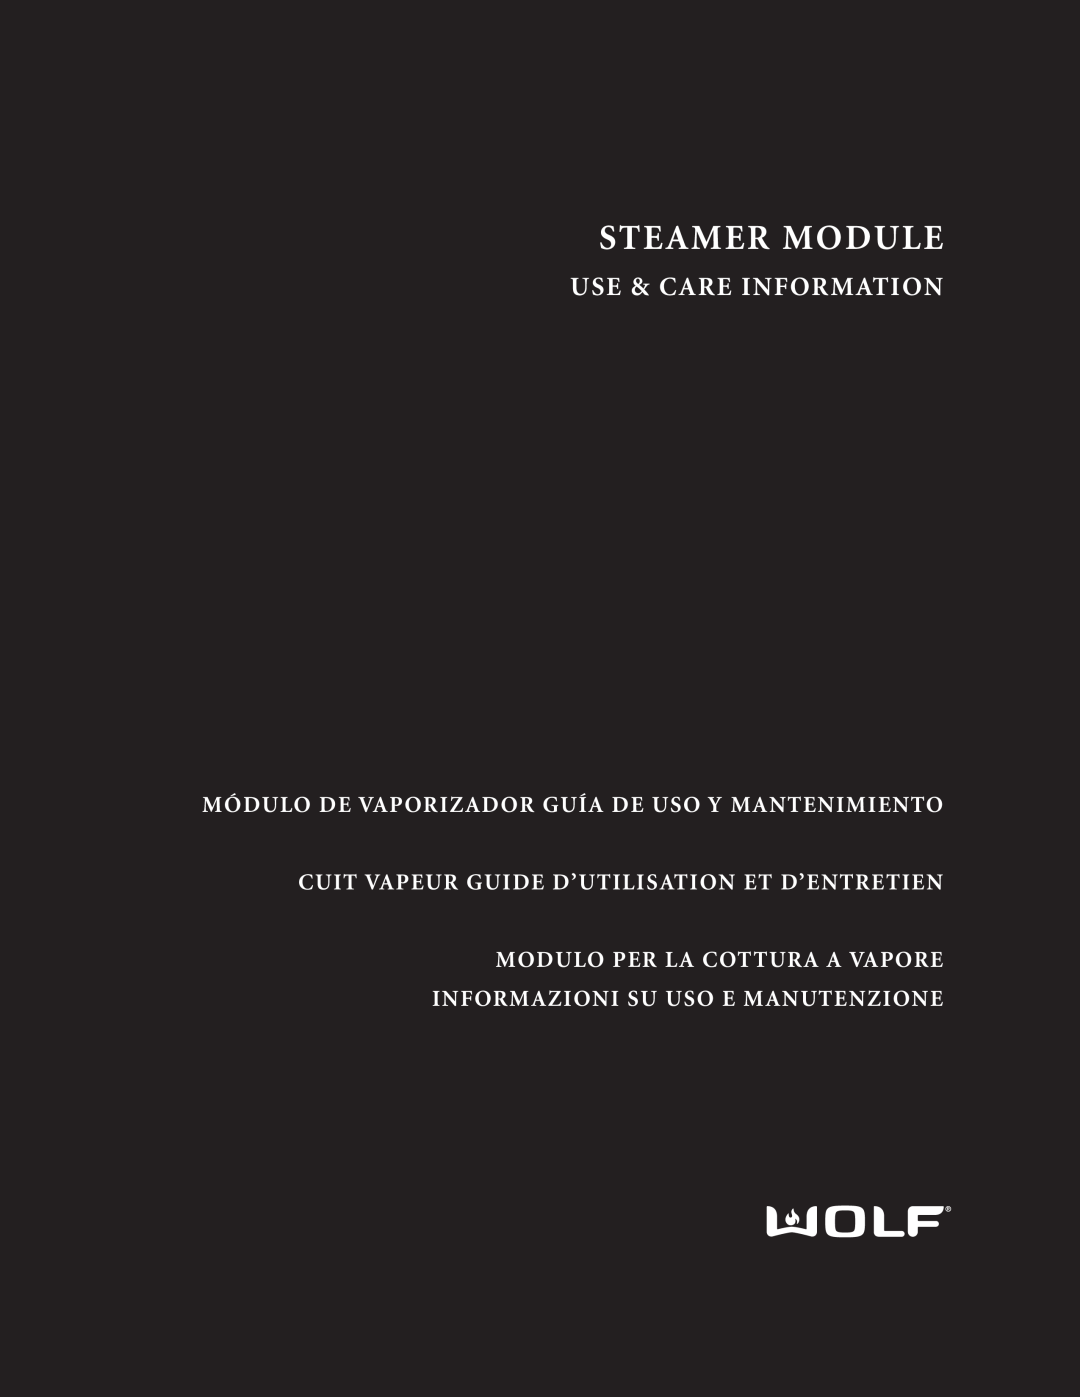 Wolf manual Steamer Module, Use & Care Information, Módulo De Vaporizador Guía De Uso Y Mantenimiento 